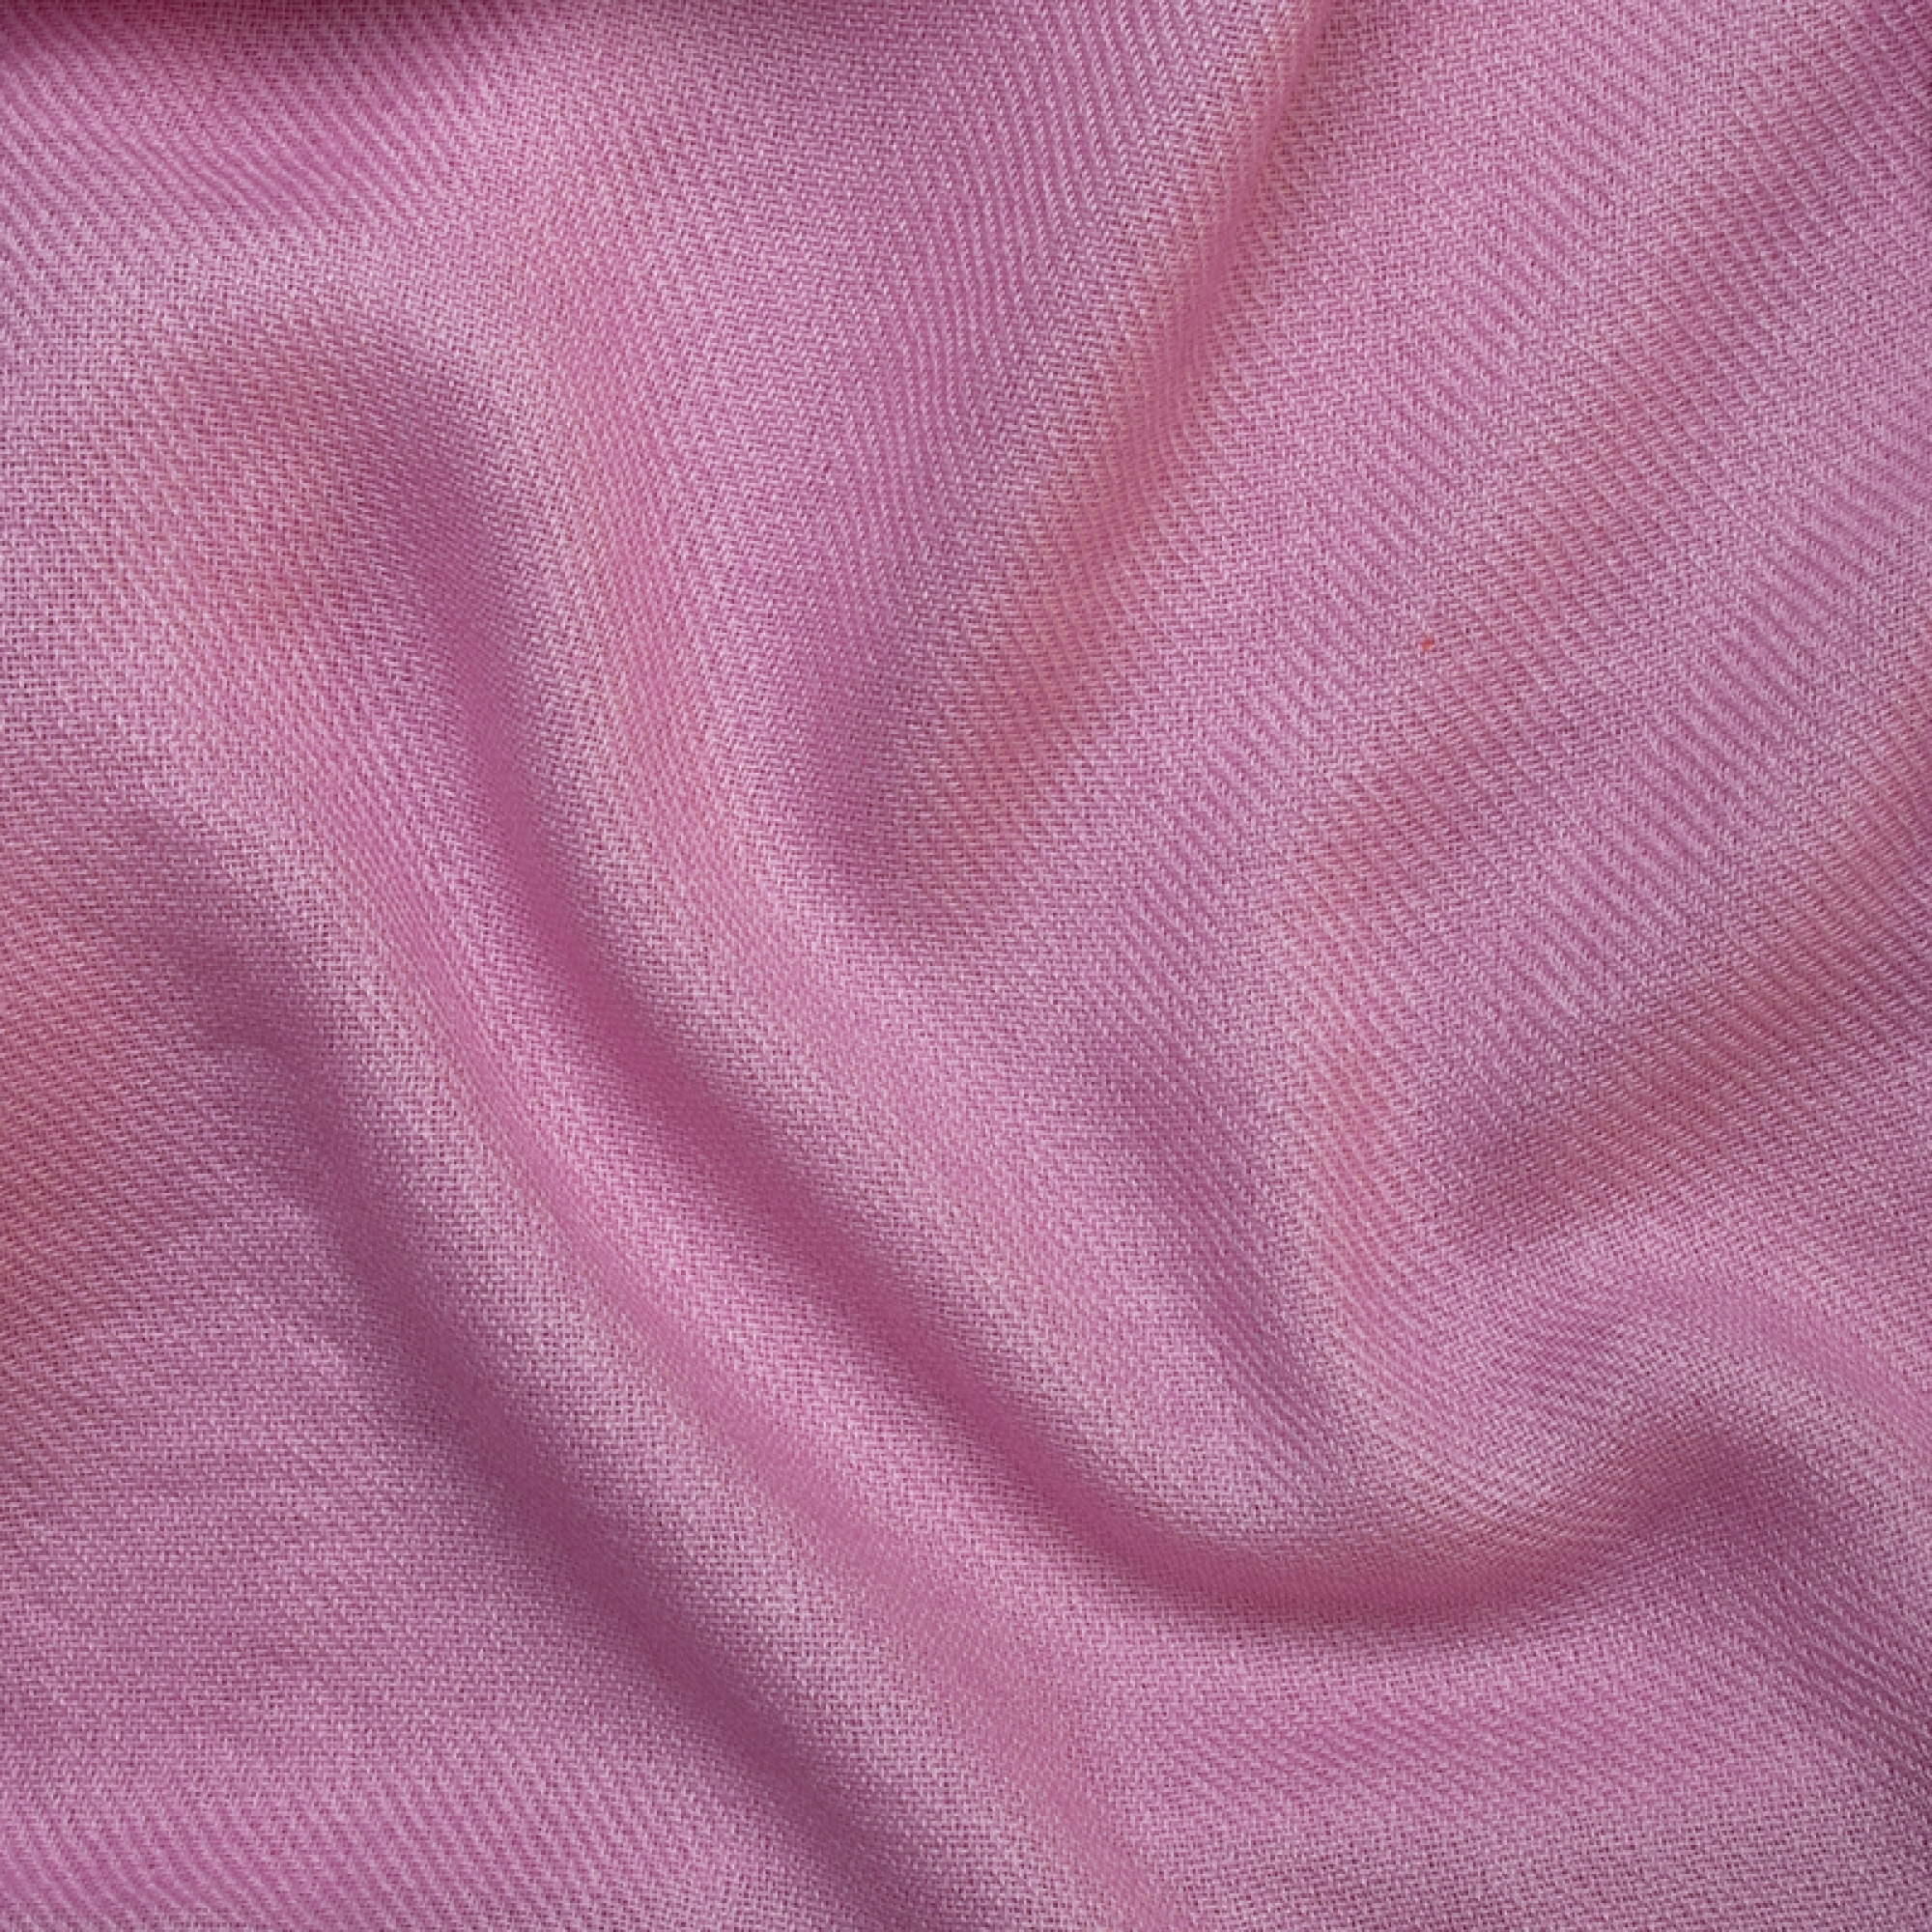 Cachemire accessoires couvertures plaids toodoo plain s 140 x 200 rose 140 x 200 cm